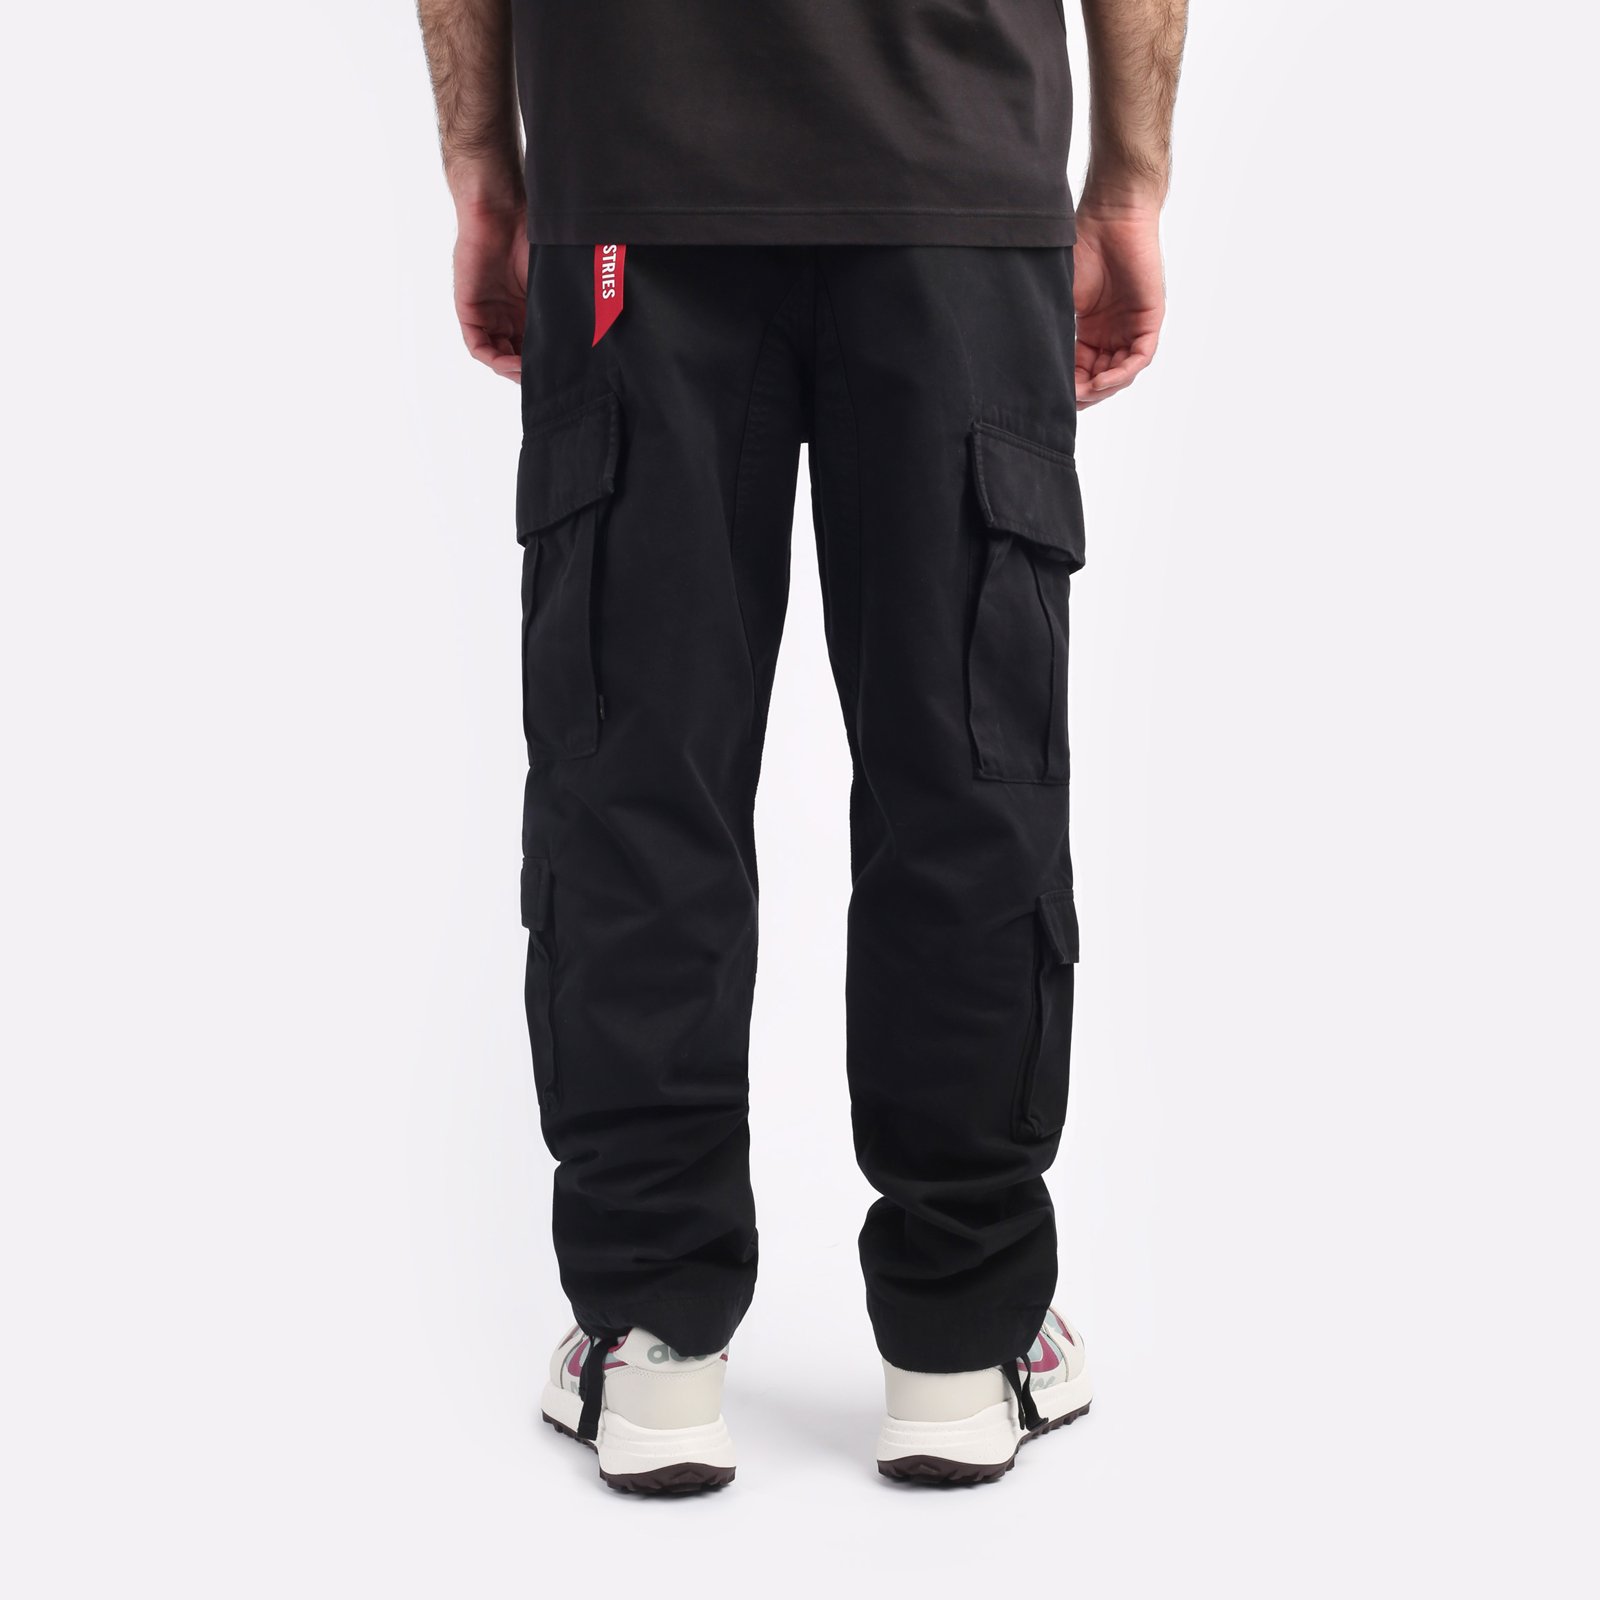 мужские брюки Alpha Industries ACU Pant  (MBA52501C1-black)  - цена, описание, фото 2